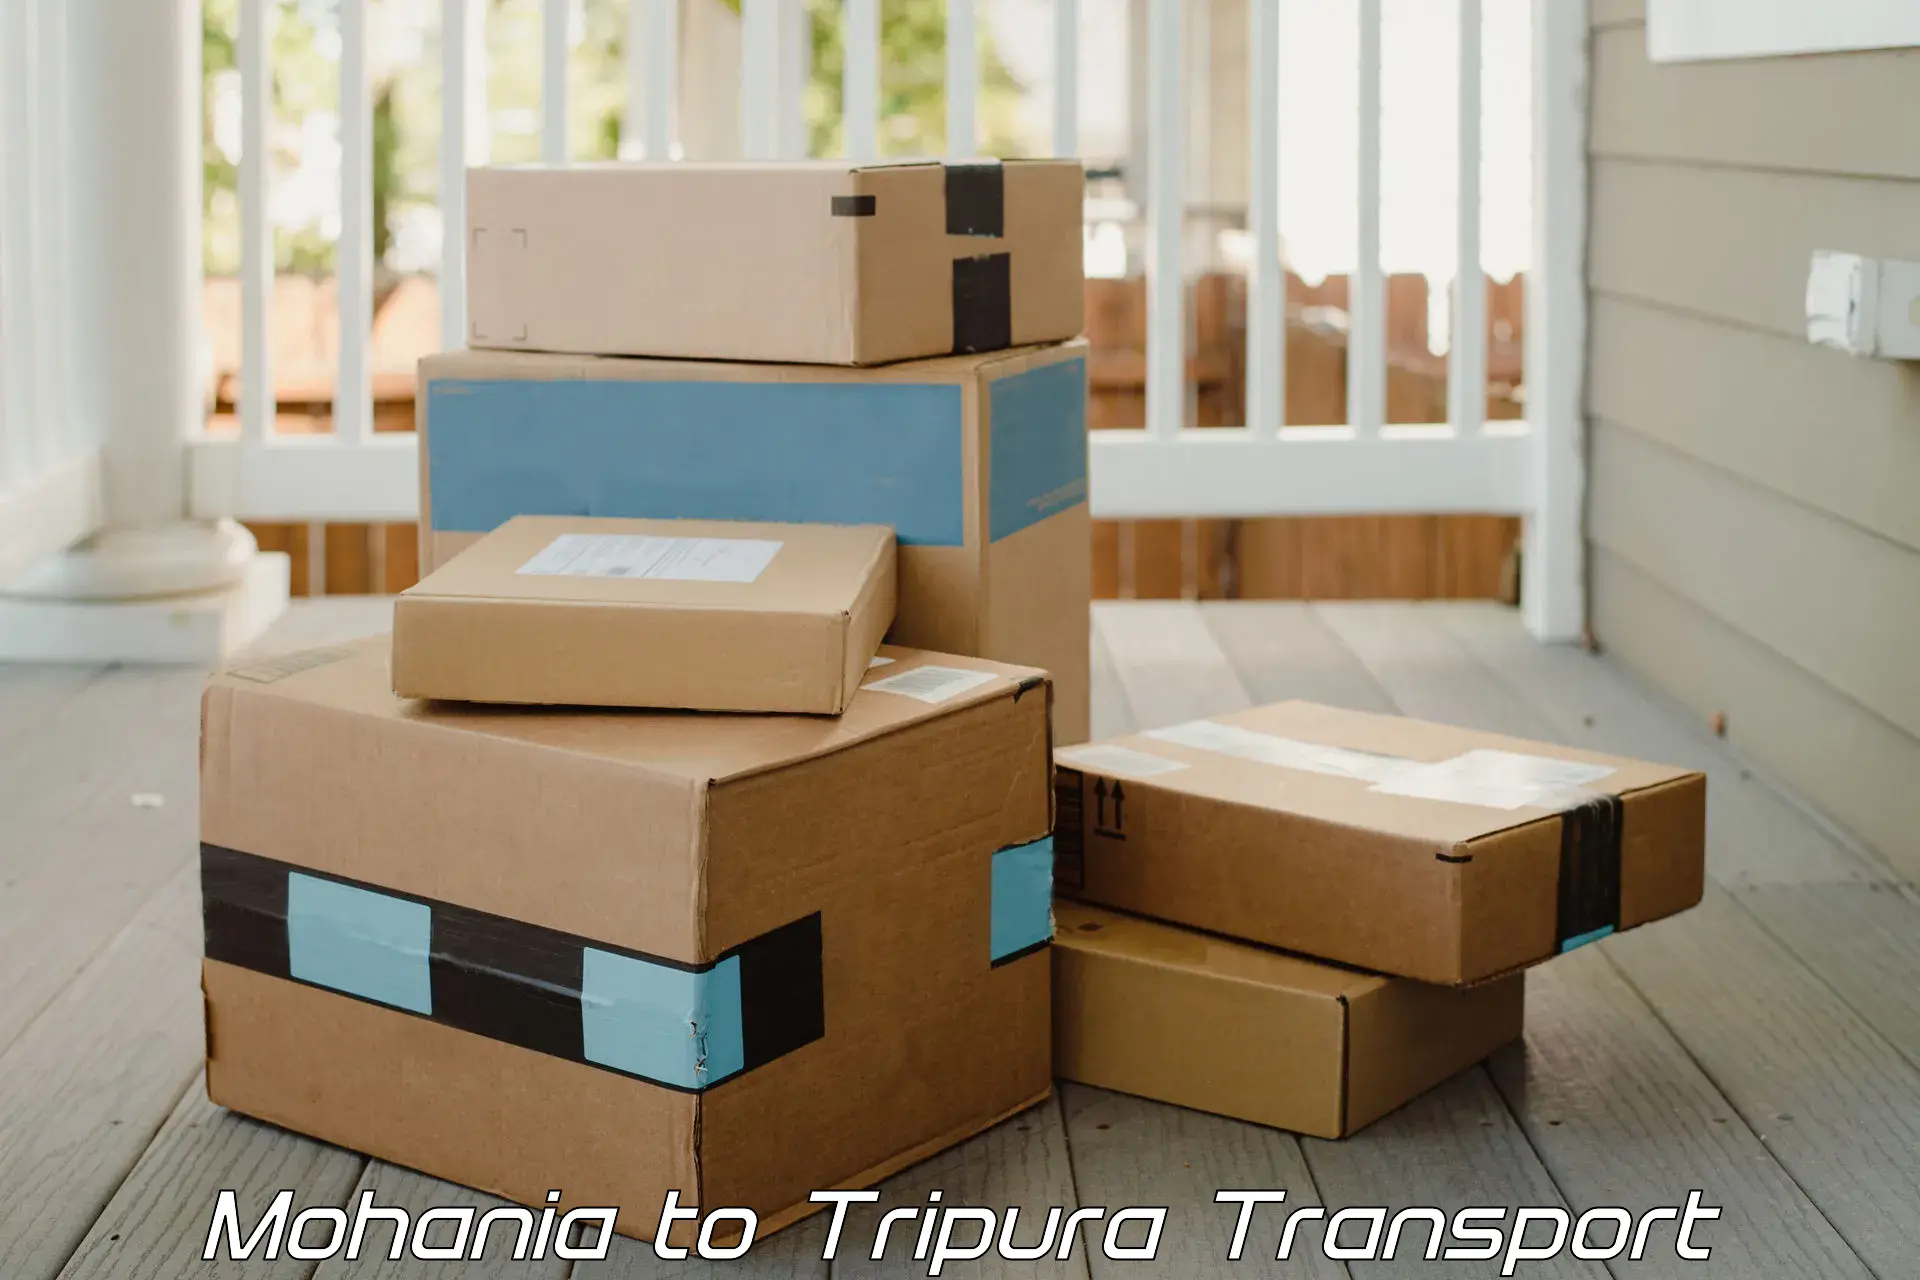 Cargo transportation services Mohania to Aambasa